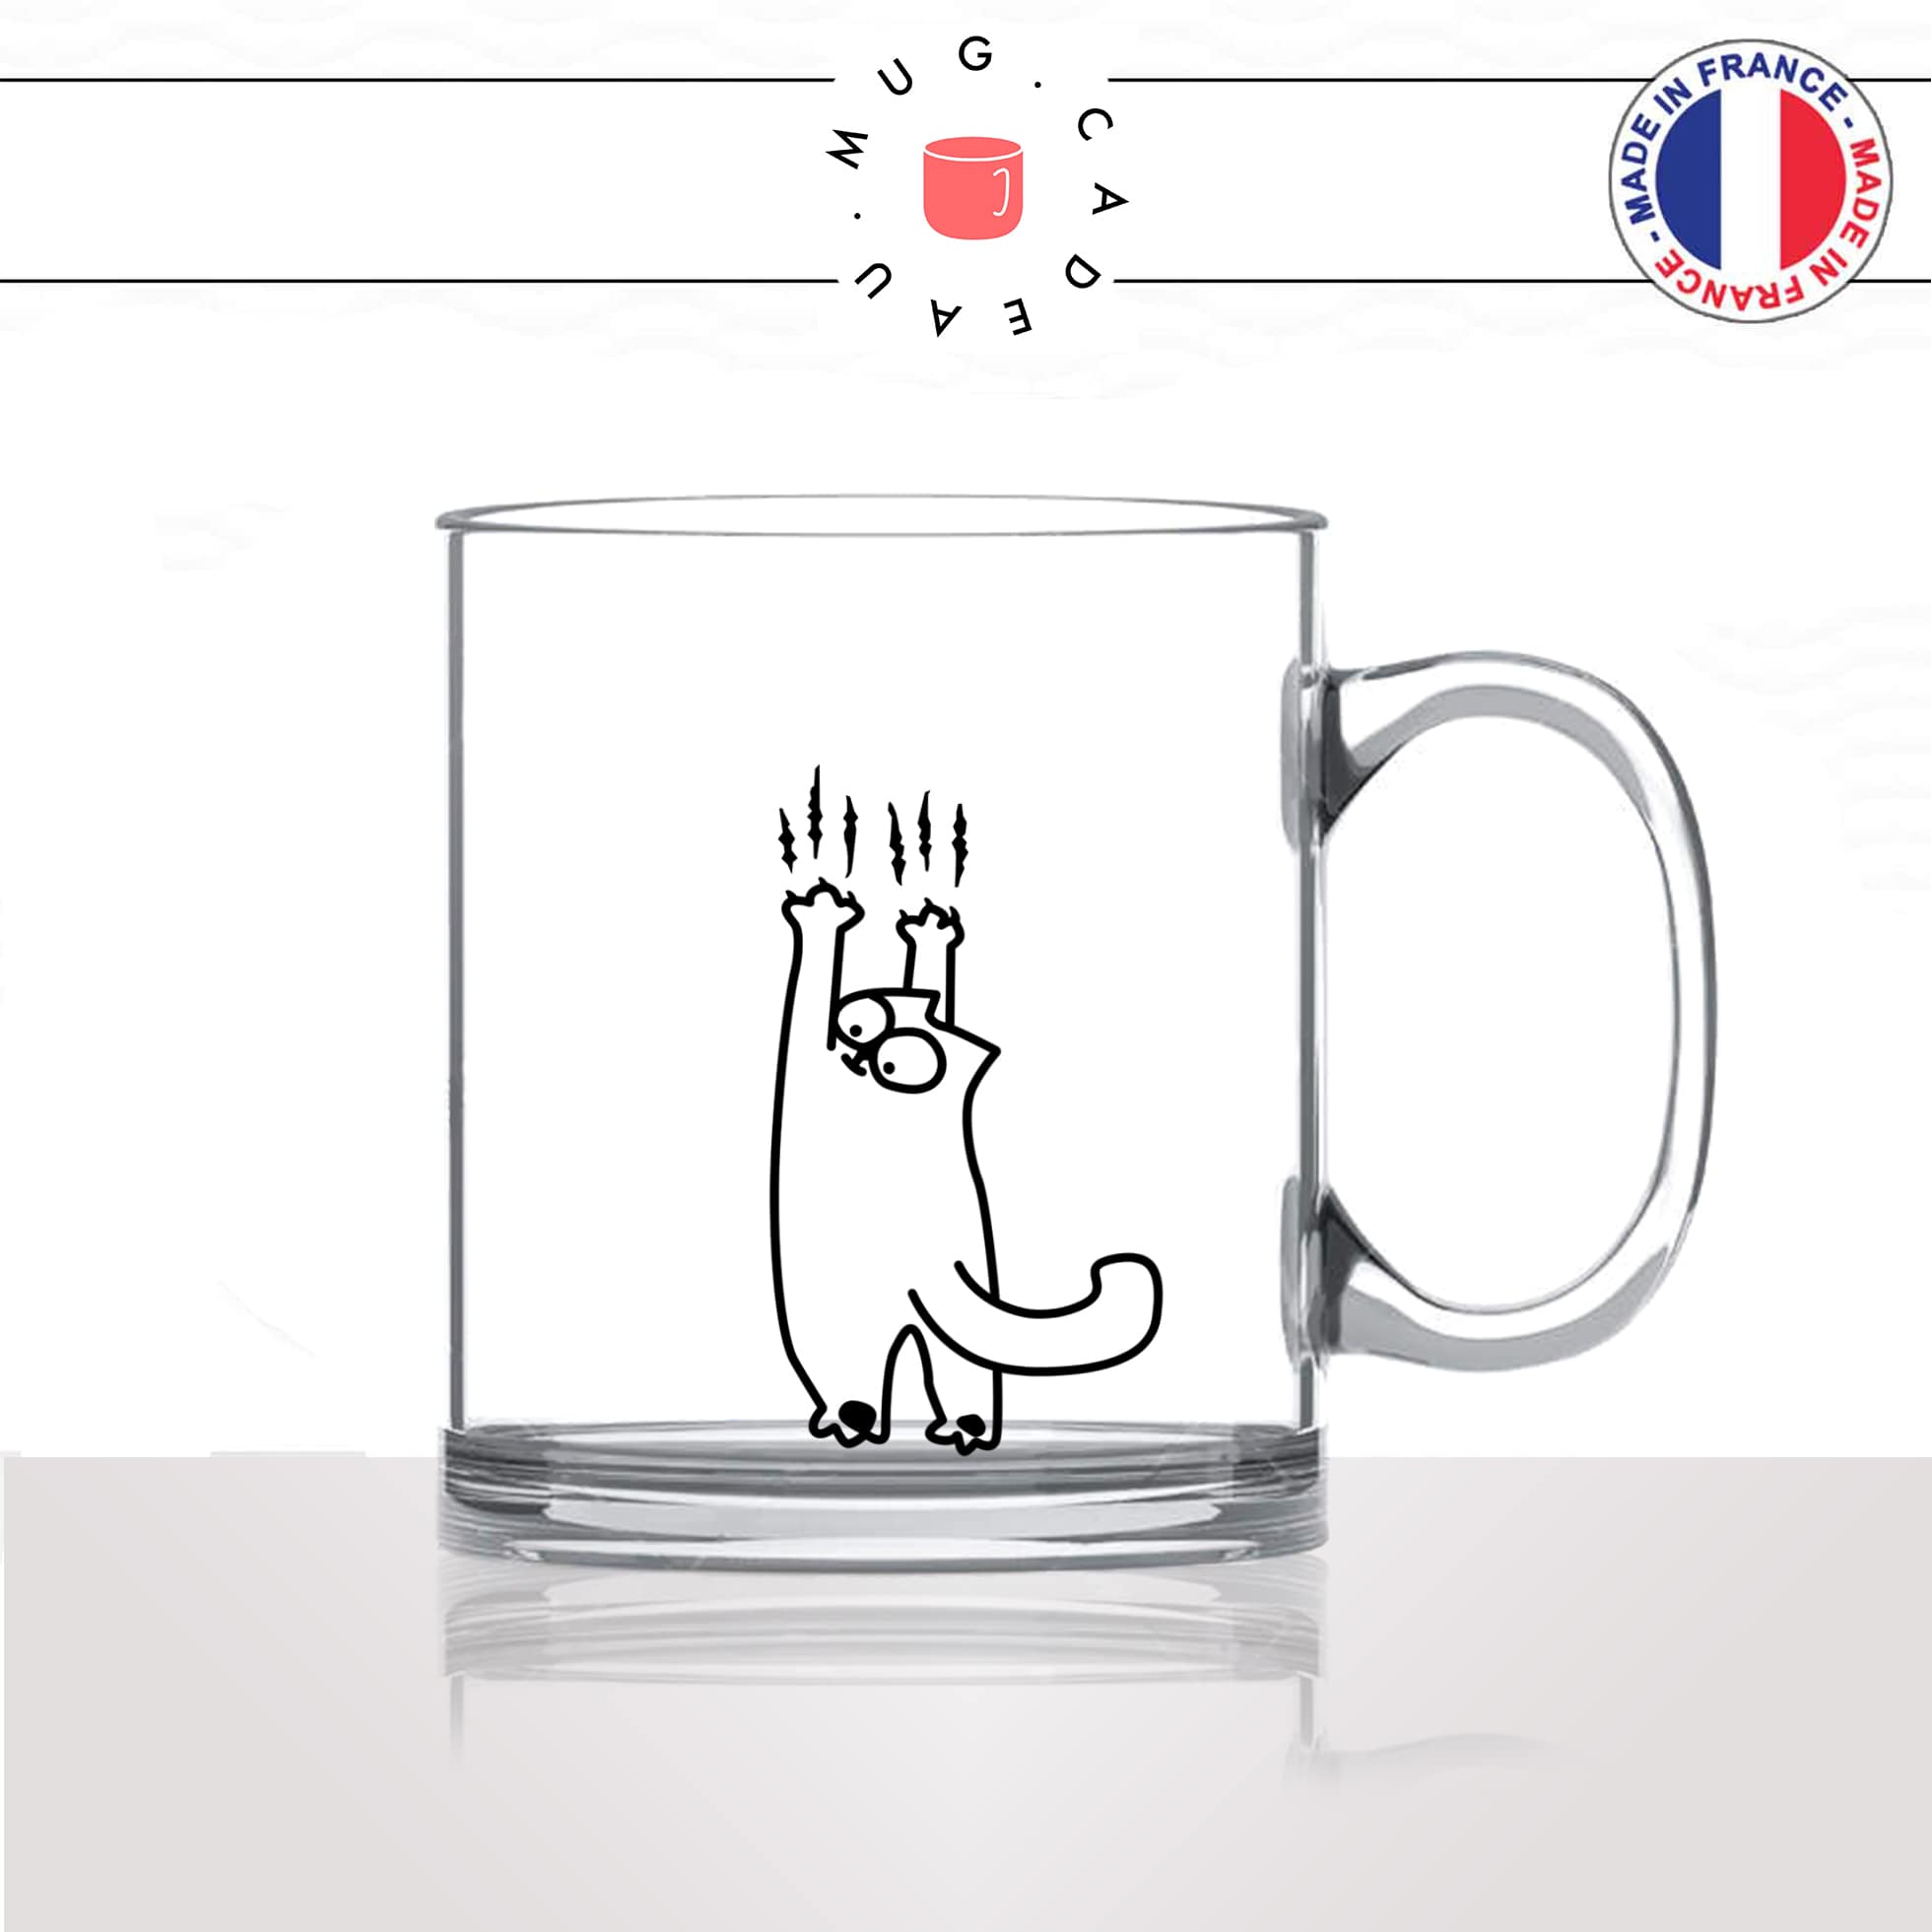 mug-tasse-en-verre-transparent-animaux-glass-griffes-griffures-chats-animal-chaton-dessin-noir-fun-café-thé-idée-cadeau-original-personnalisé2-min